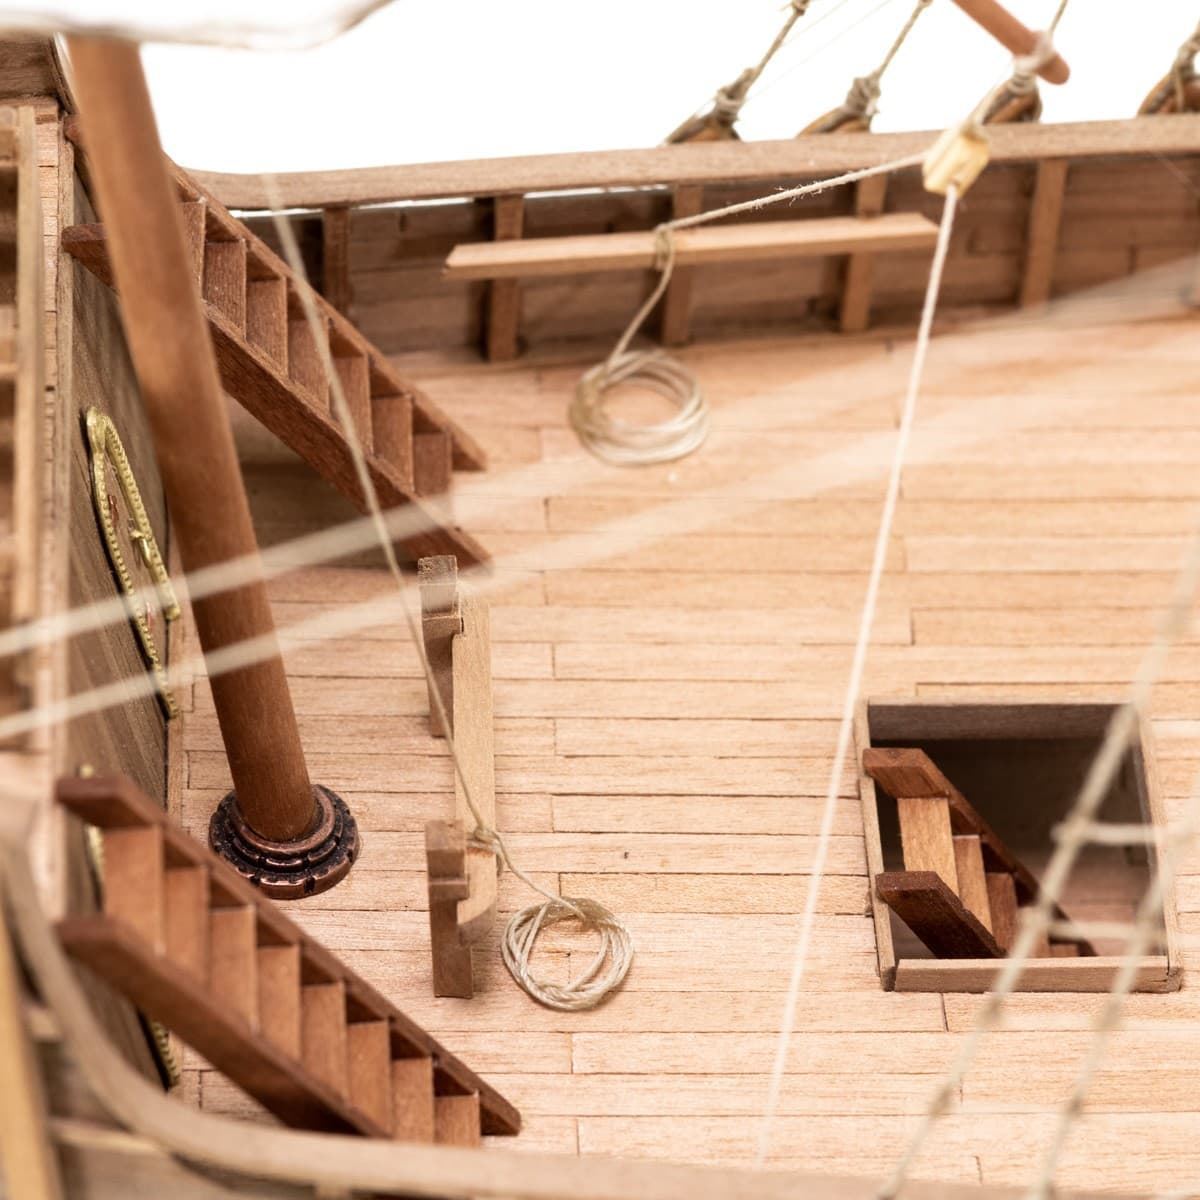 Maqueta barco madera: Carabela Santa María - Imagen 7